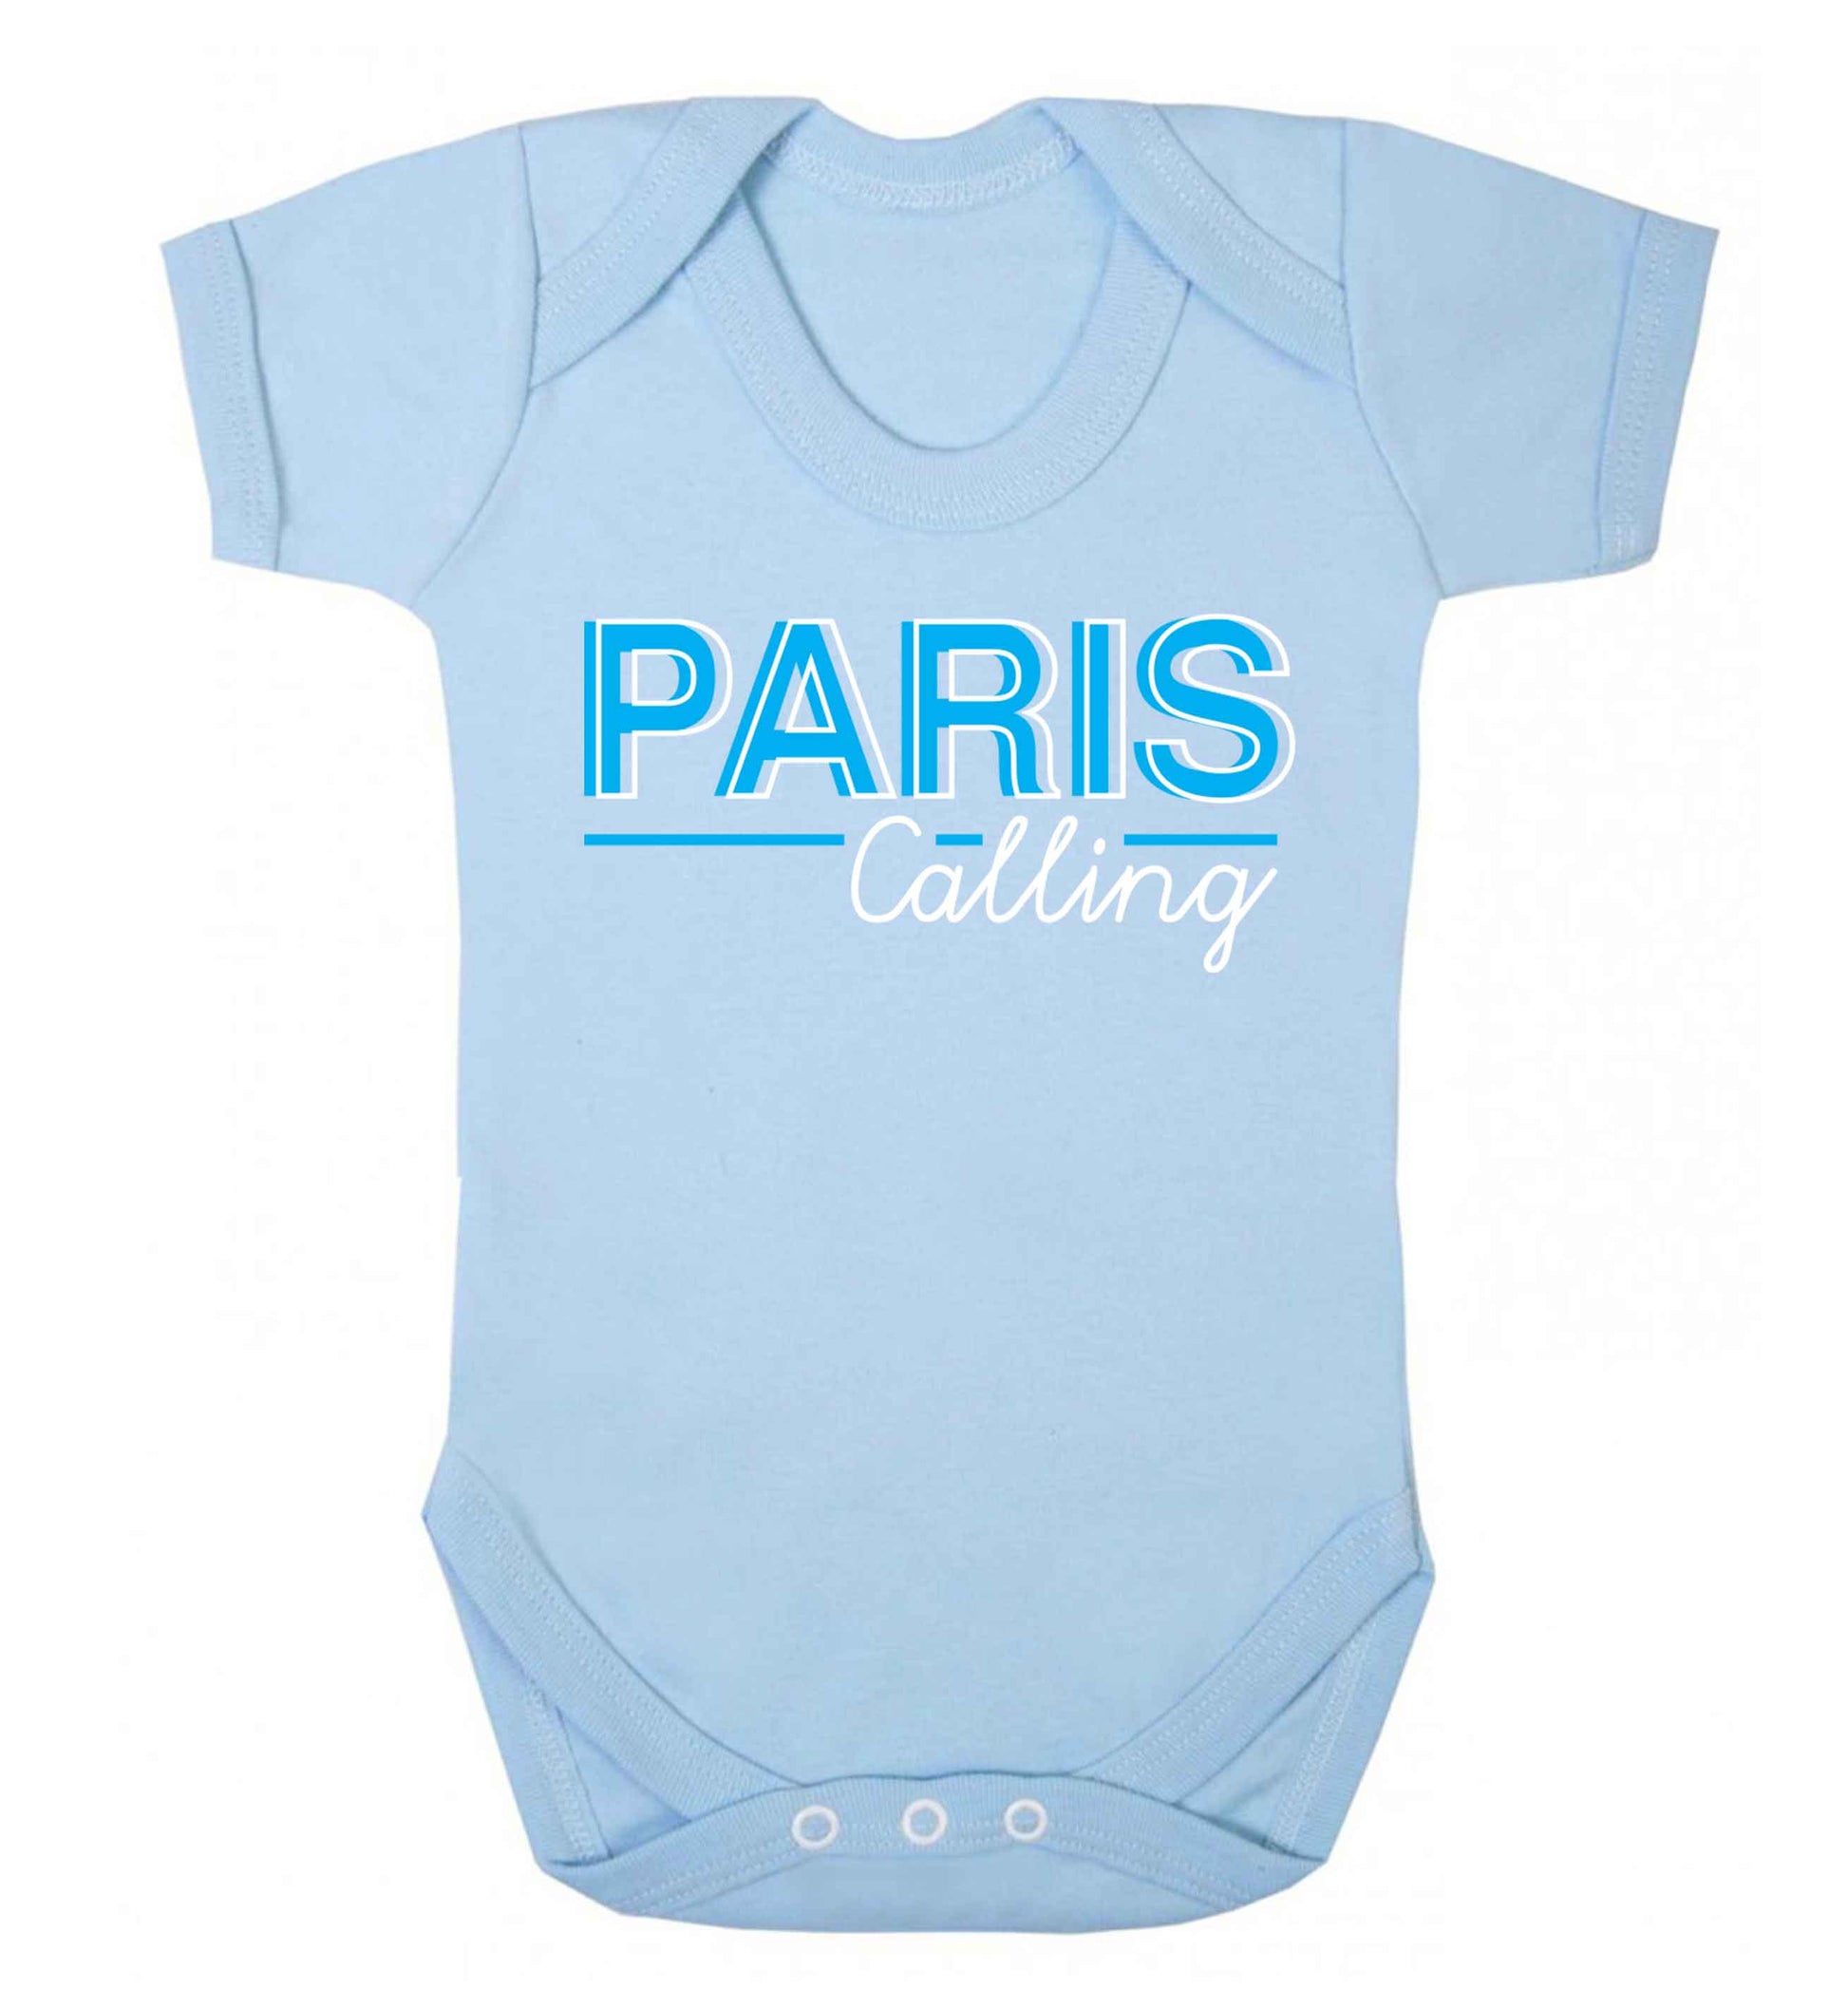 Paris calling Baby Vest pale blue 18-24 months